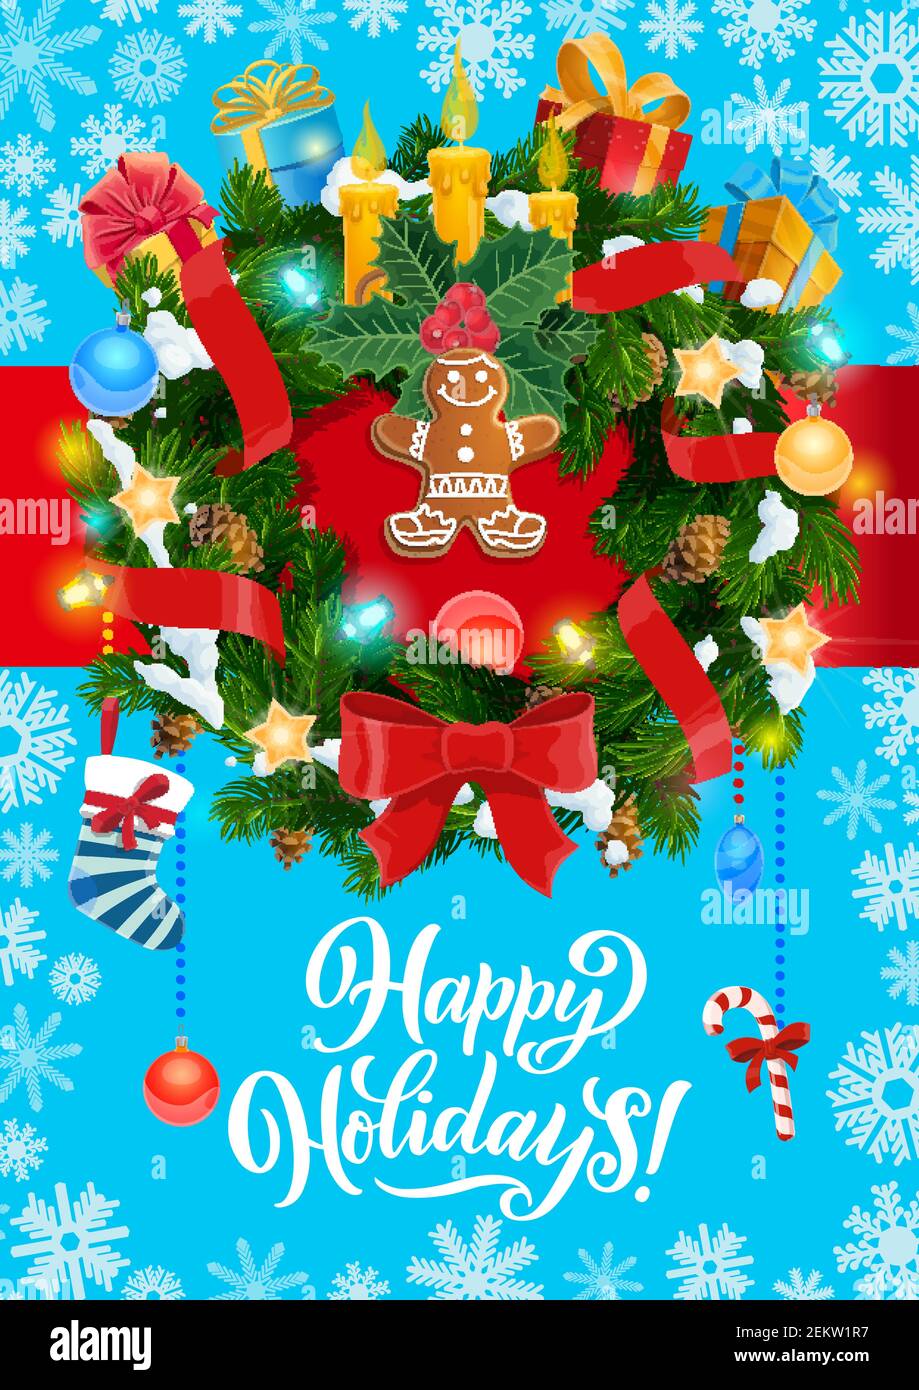 Felice festa saluto di Merry Natale Vector decorazione corona albero di Natale con candele, stelle d'oro confetti, uomo pan di zenzero e regalo di Natale Illustrazione Vettoriale